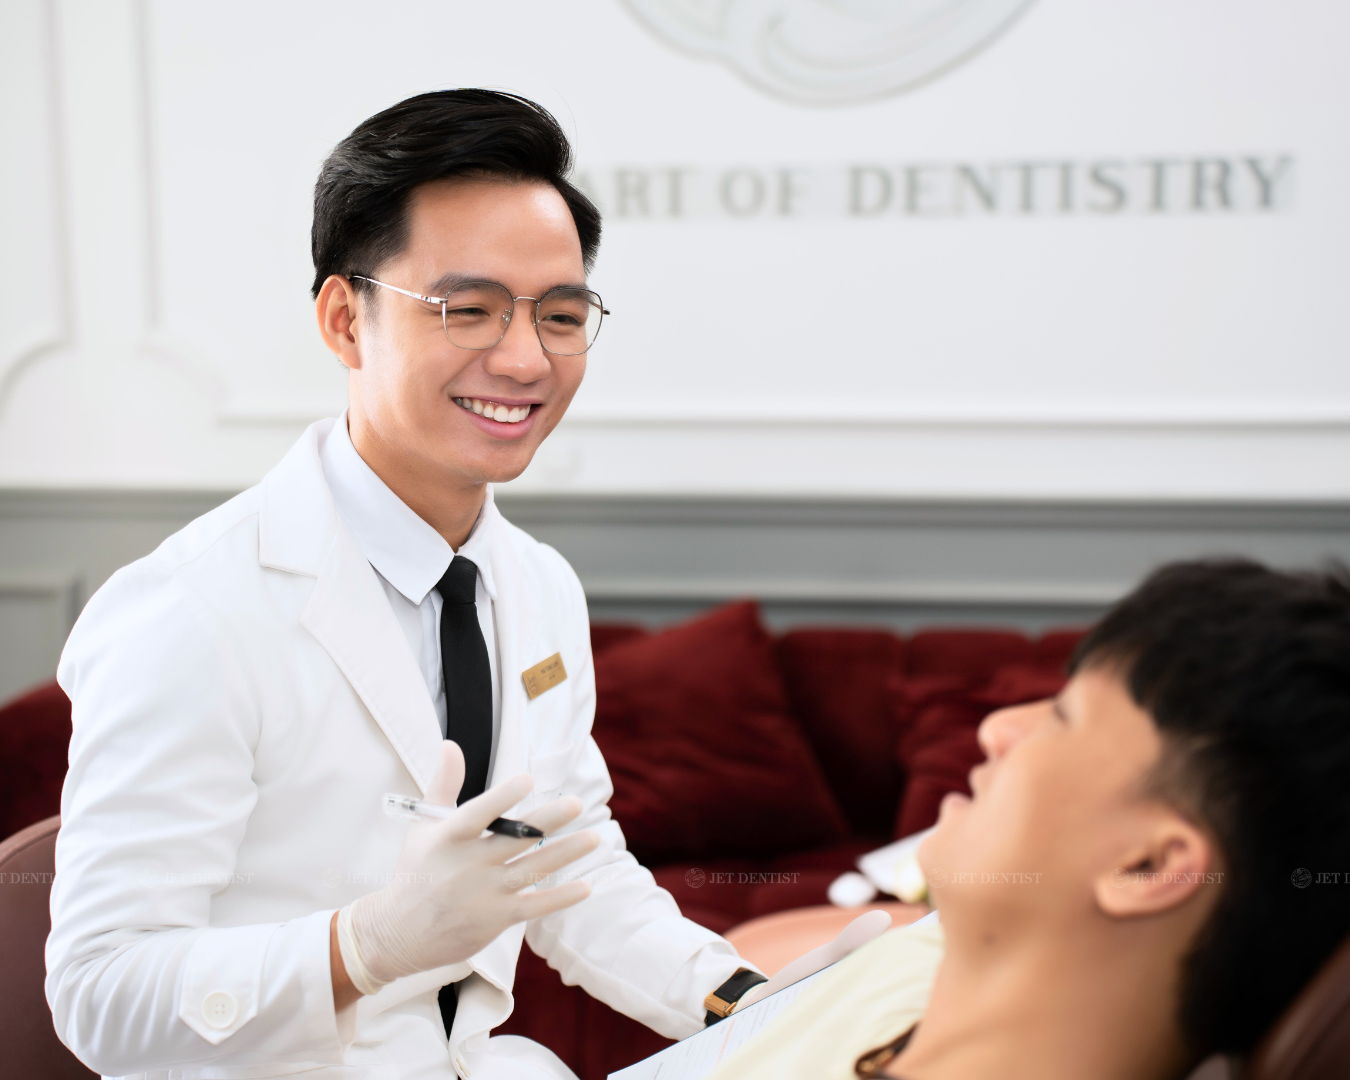 Jet Dentist với chế độ bảo hành chính hãng đến 15 năm; chăm sóc trọn đời vùng răng và lợi thẩm mỹ, tạo sự yên tâm tuyệt đối cho khách hàng